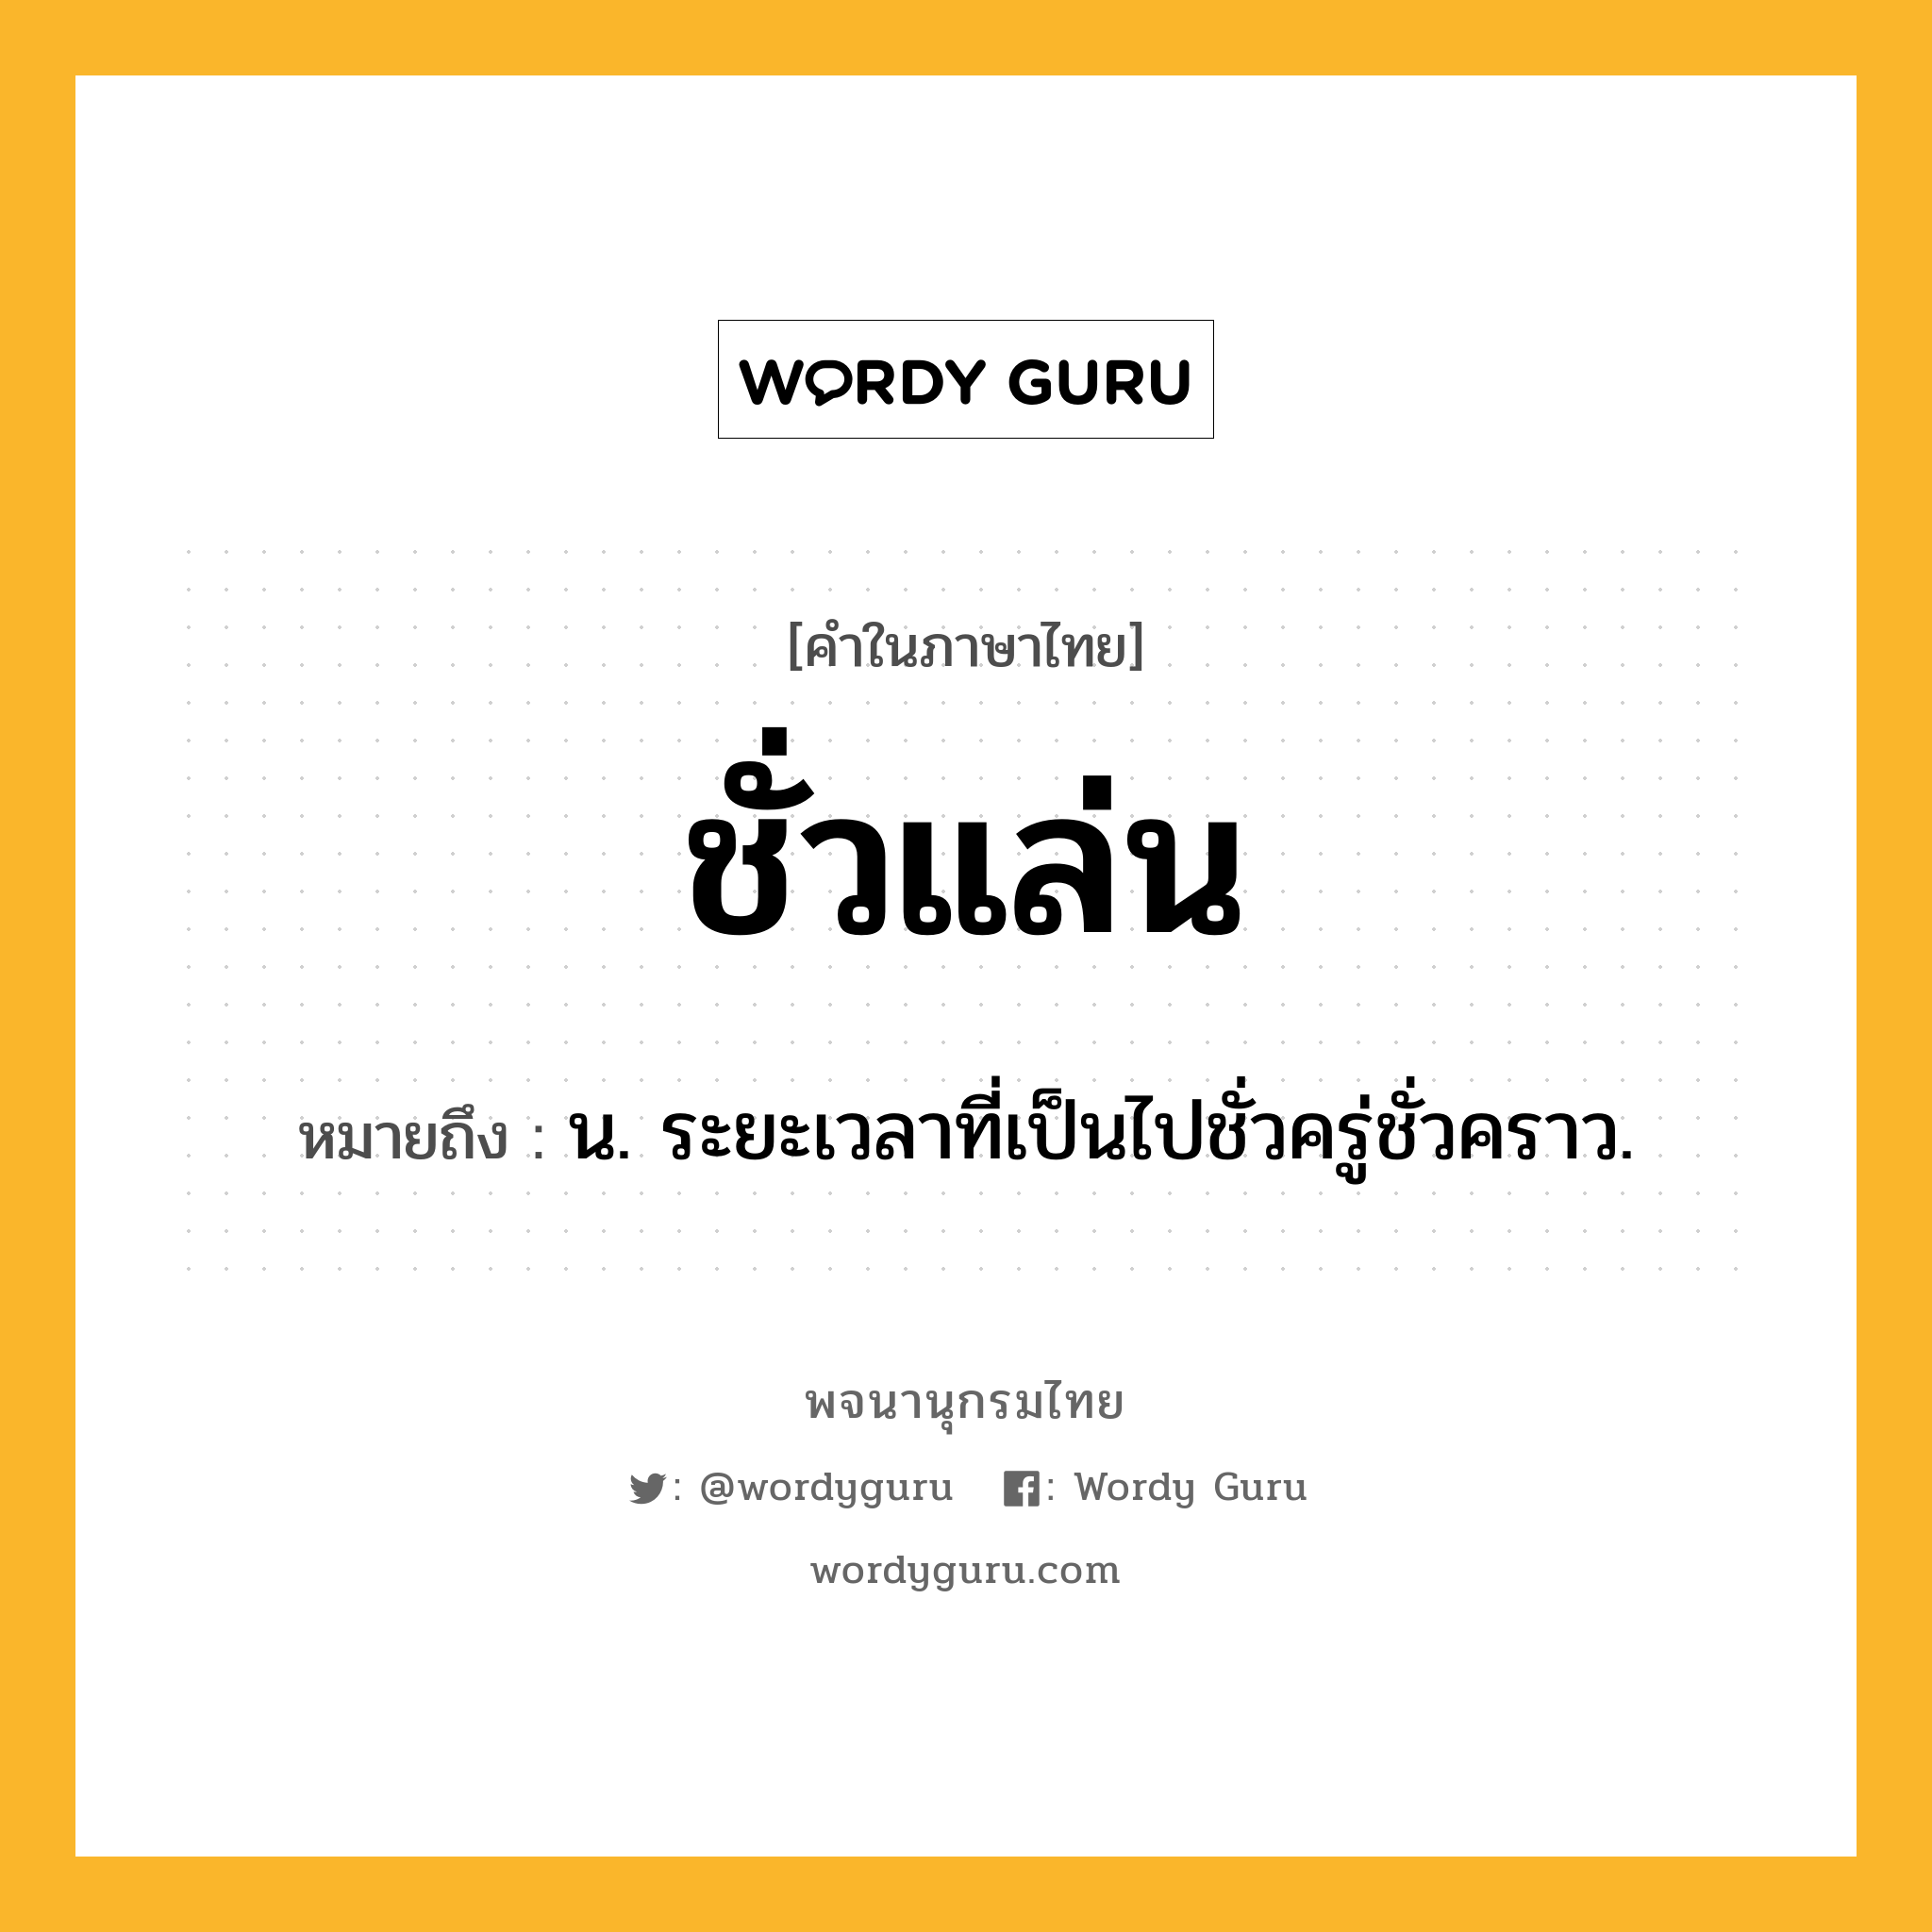 ชั่วแล่น ความหมาย หมายถึงอะไร?, คำในภาษาไทย ชั่วแล่น หมายถึง น. ระยะเวลาที่เป็นไปชั่วครู่ชั่วคราว.